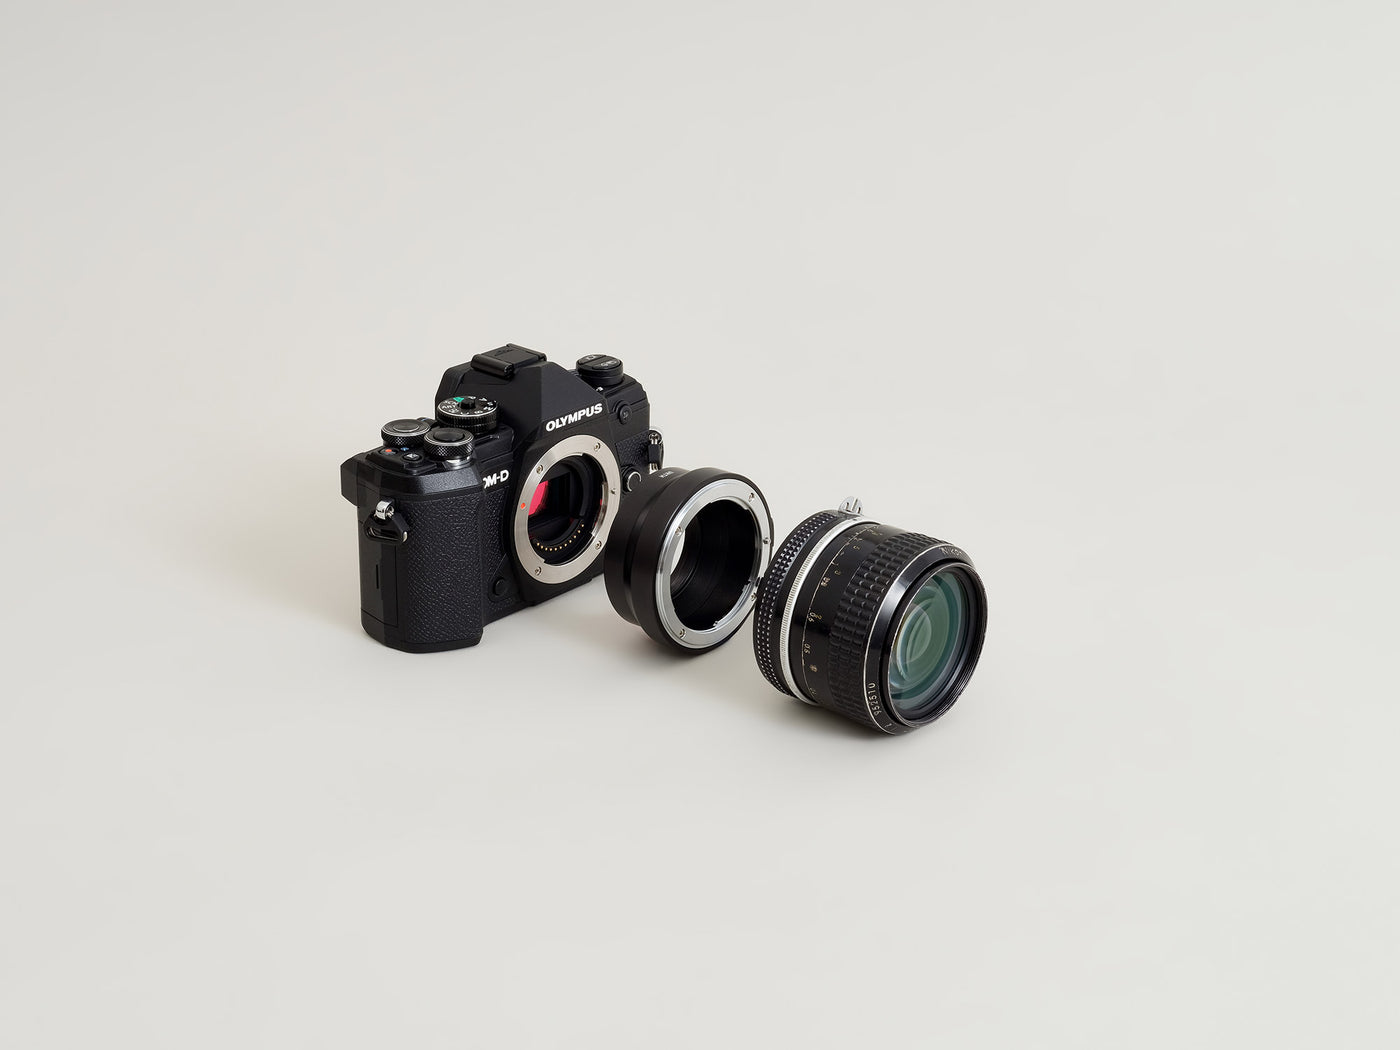 Nikon F Lens Mount to Micro Four Thirds (M4/3) Camera Mount